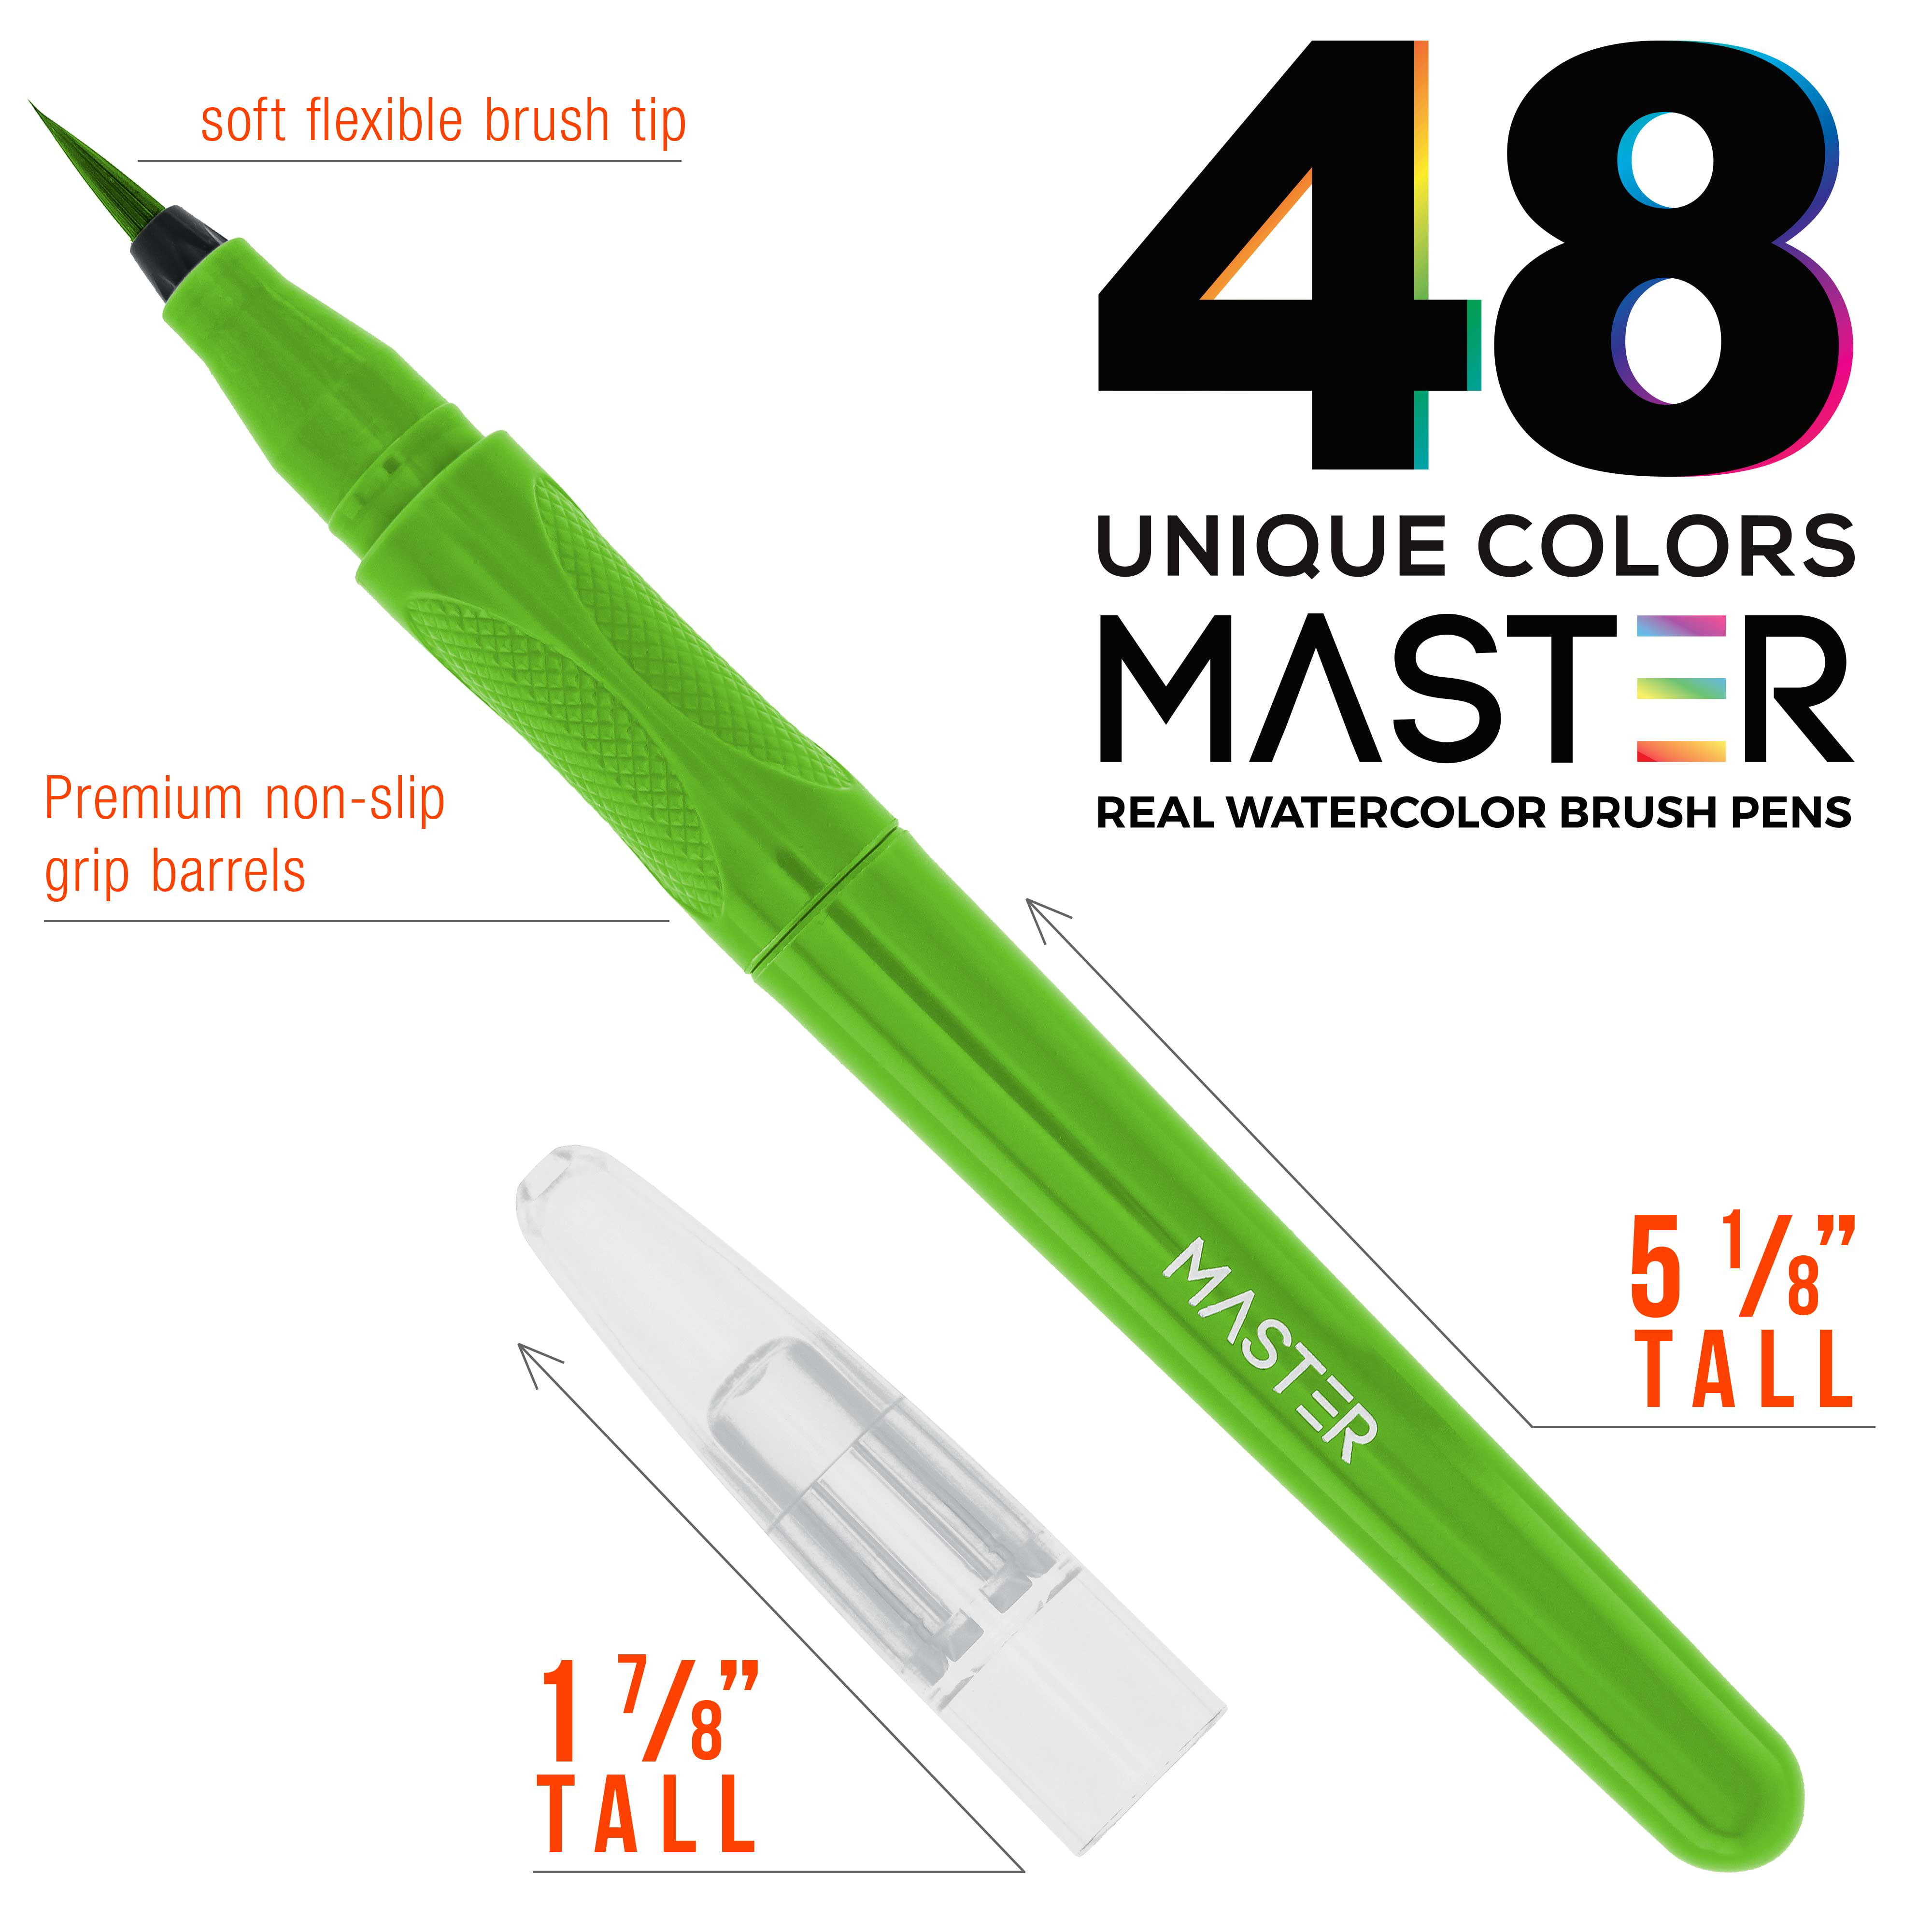 Watercolor paint pens – set of 48 watercolor brush pens